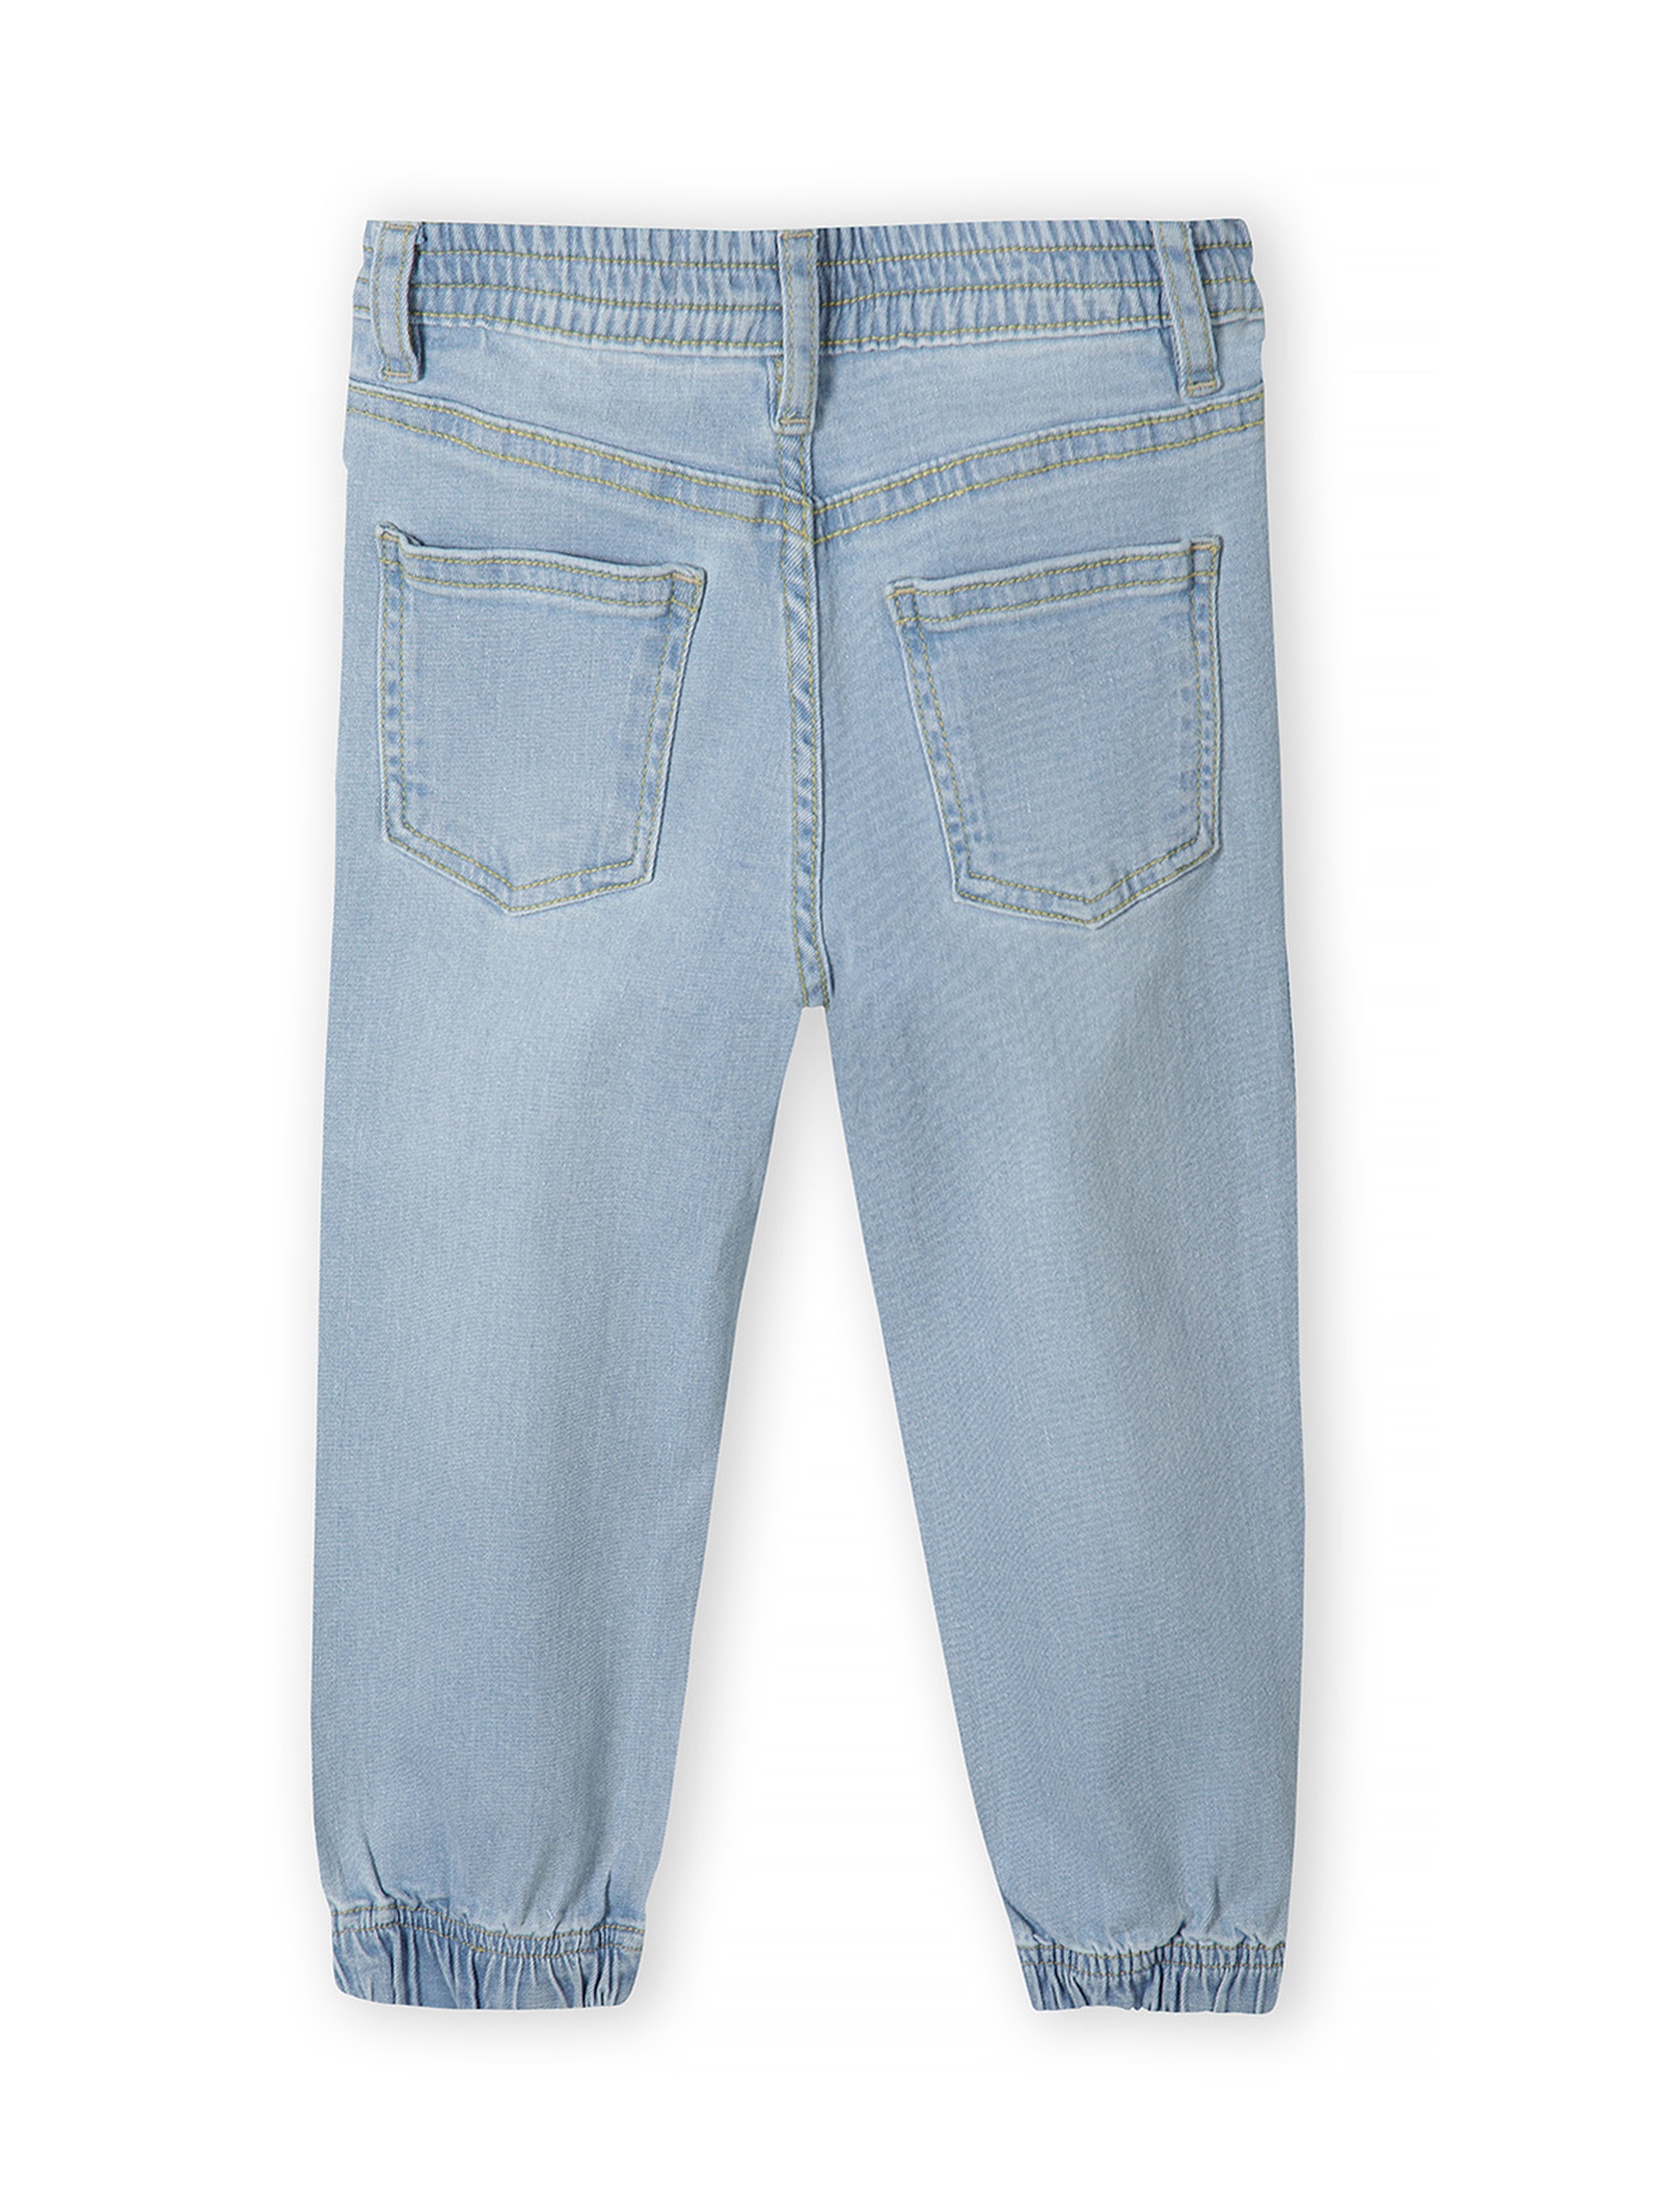 Jasnoniebieskie jeansy o kroju joggerów dla niemowlaka